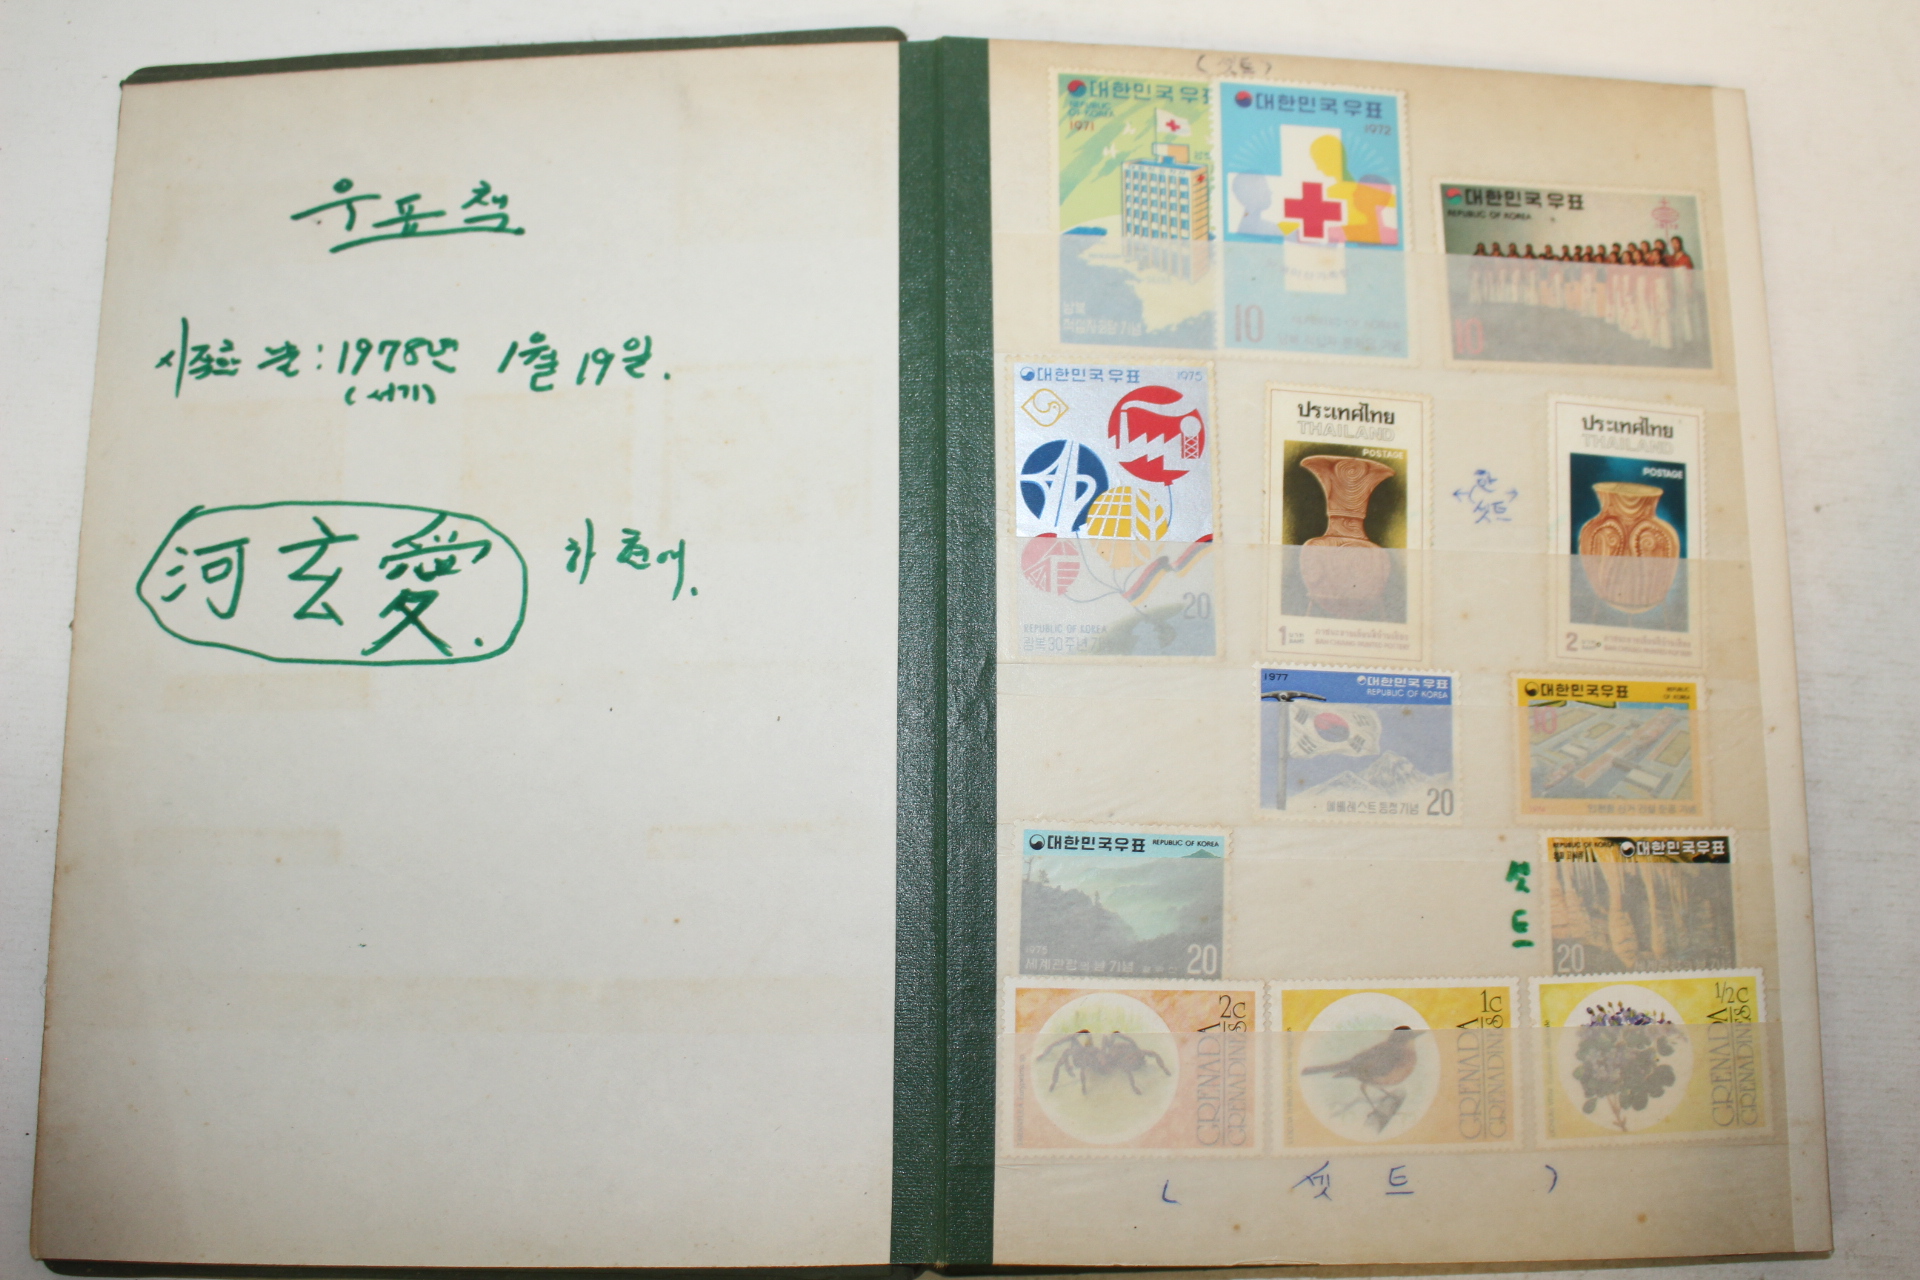 1970년대 미사용 우표와 사용우표가 170장 있는 우표첩